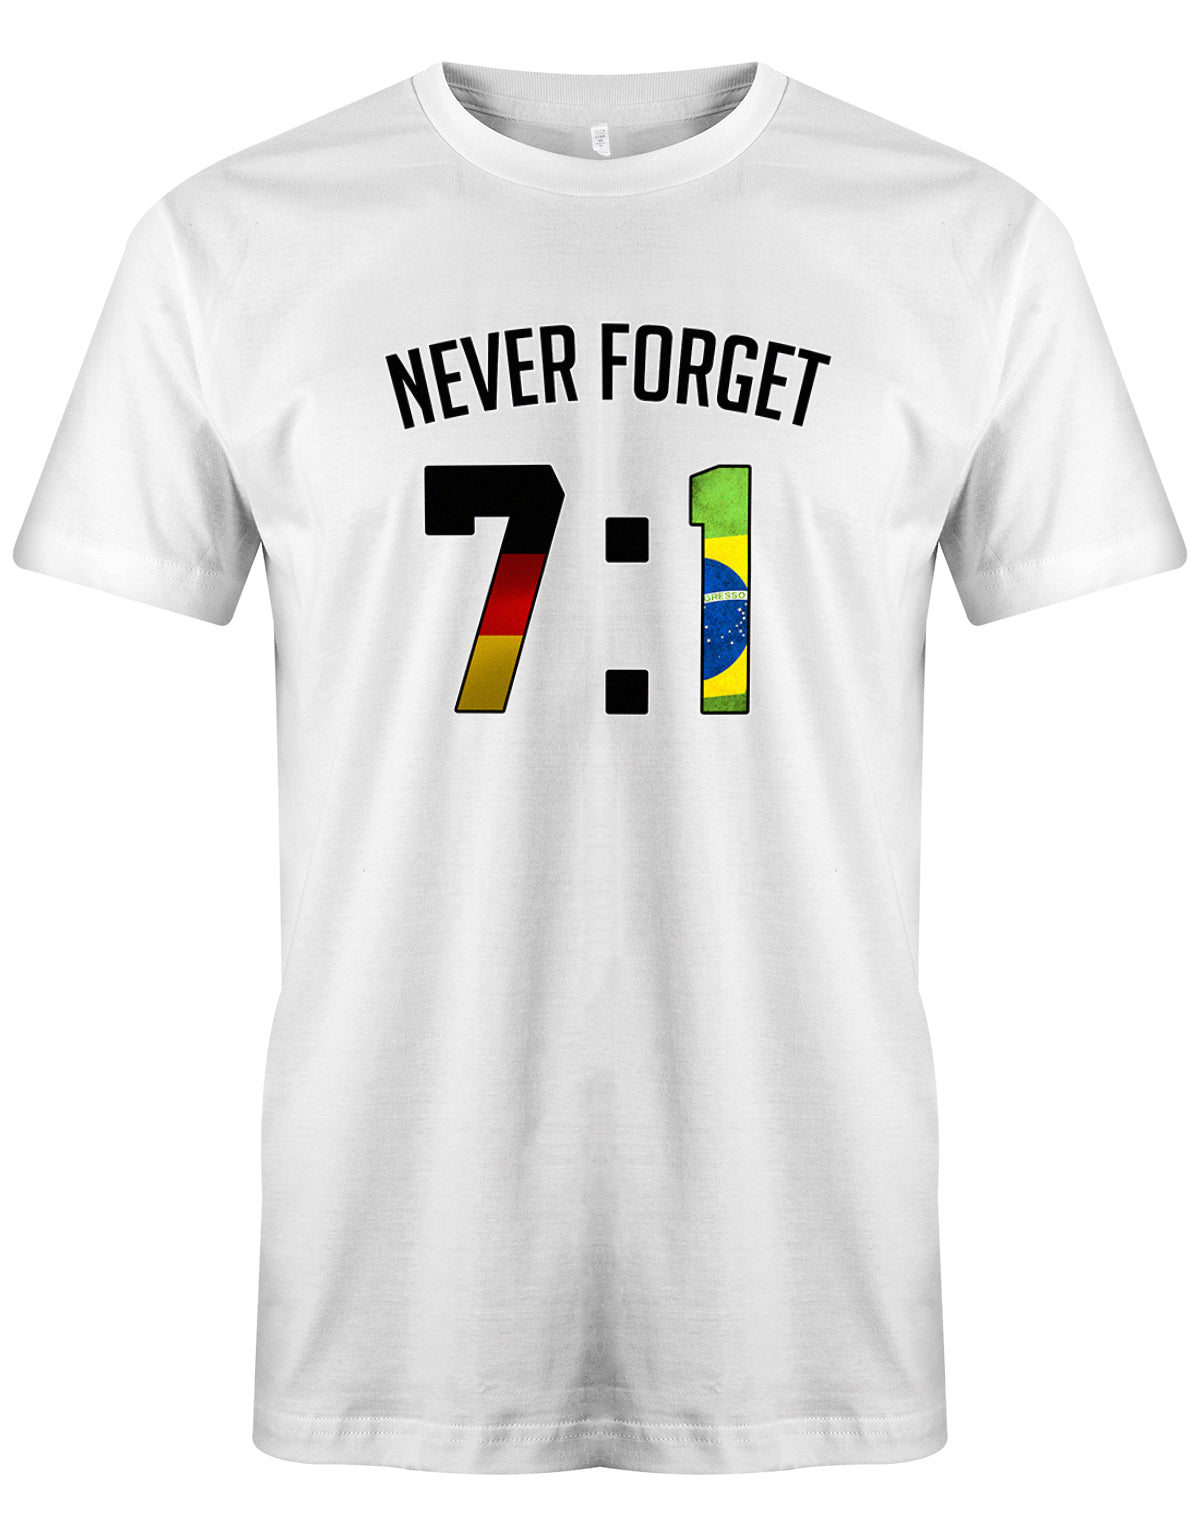 Deutschland Fan Shirt - WM - 7:1 - Never forget - Fan - Herren T-Shirt